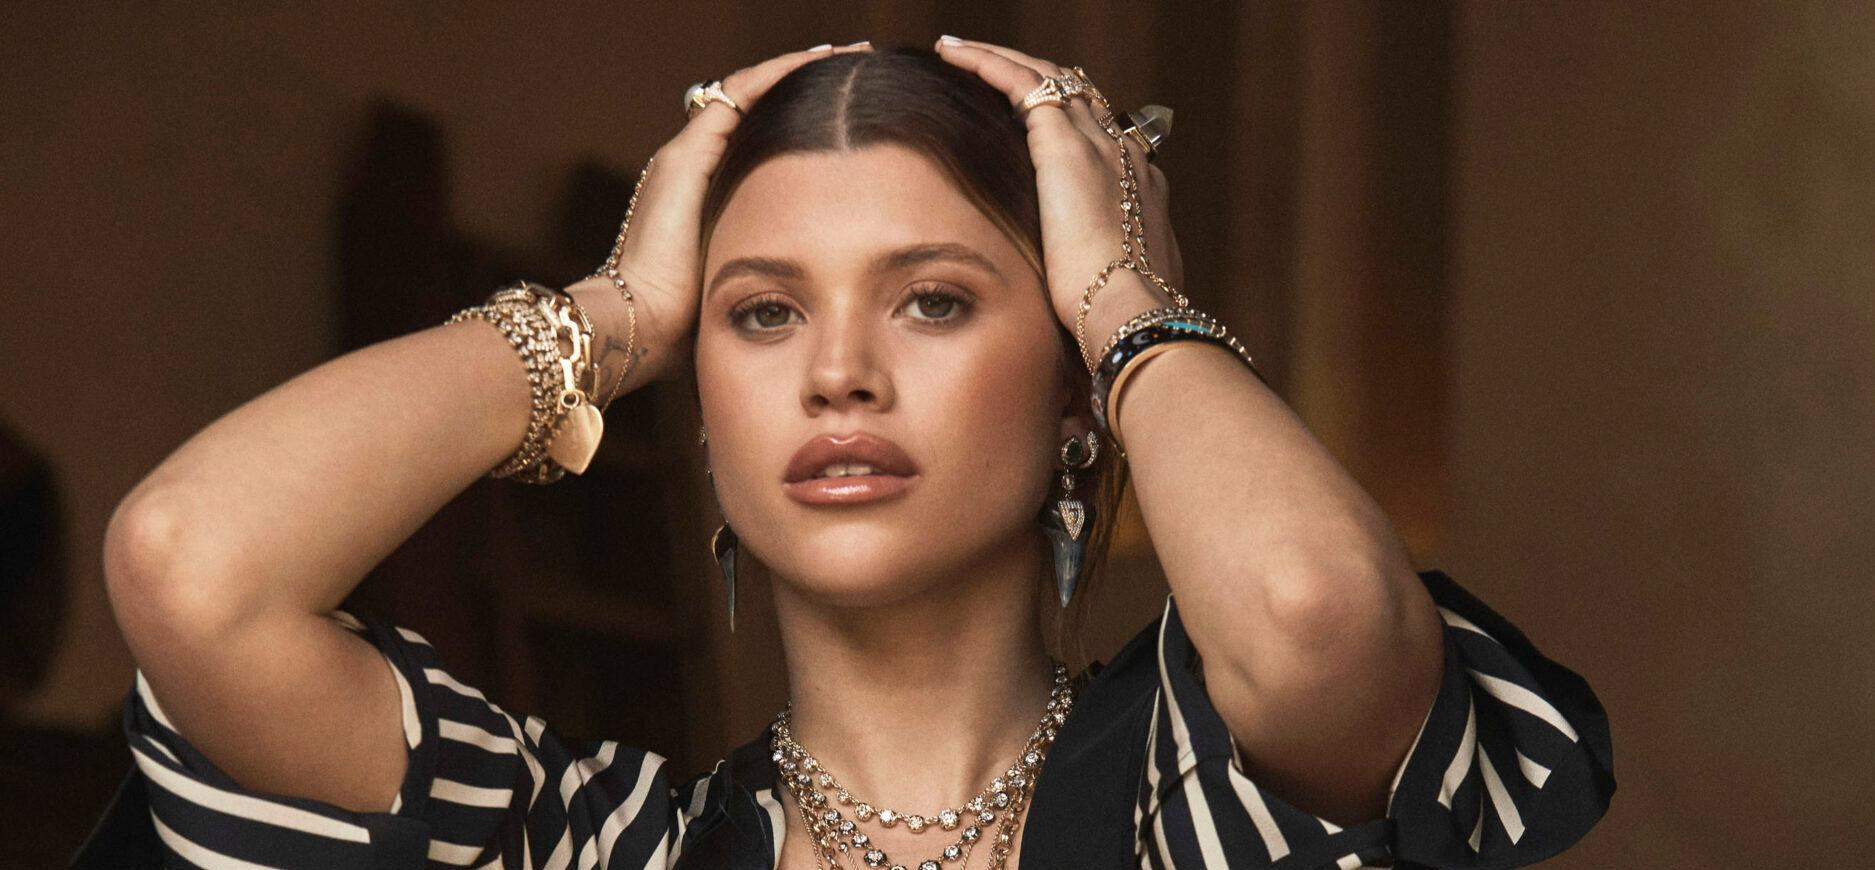 Sofia Richie shines in Divine Rising campaign for Jacquie Aiche jewelry